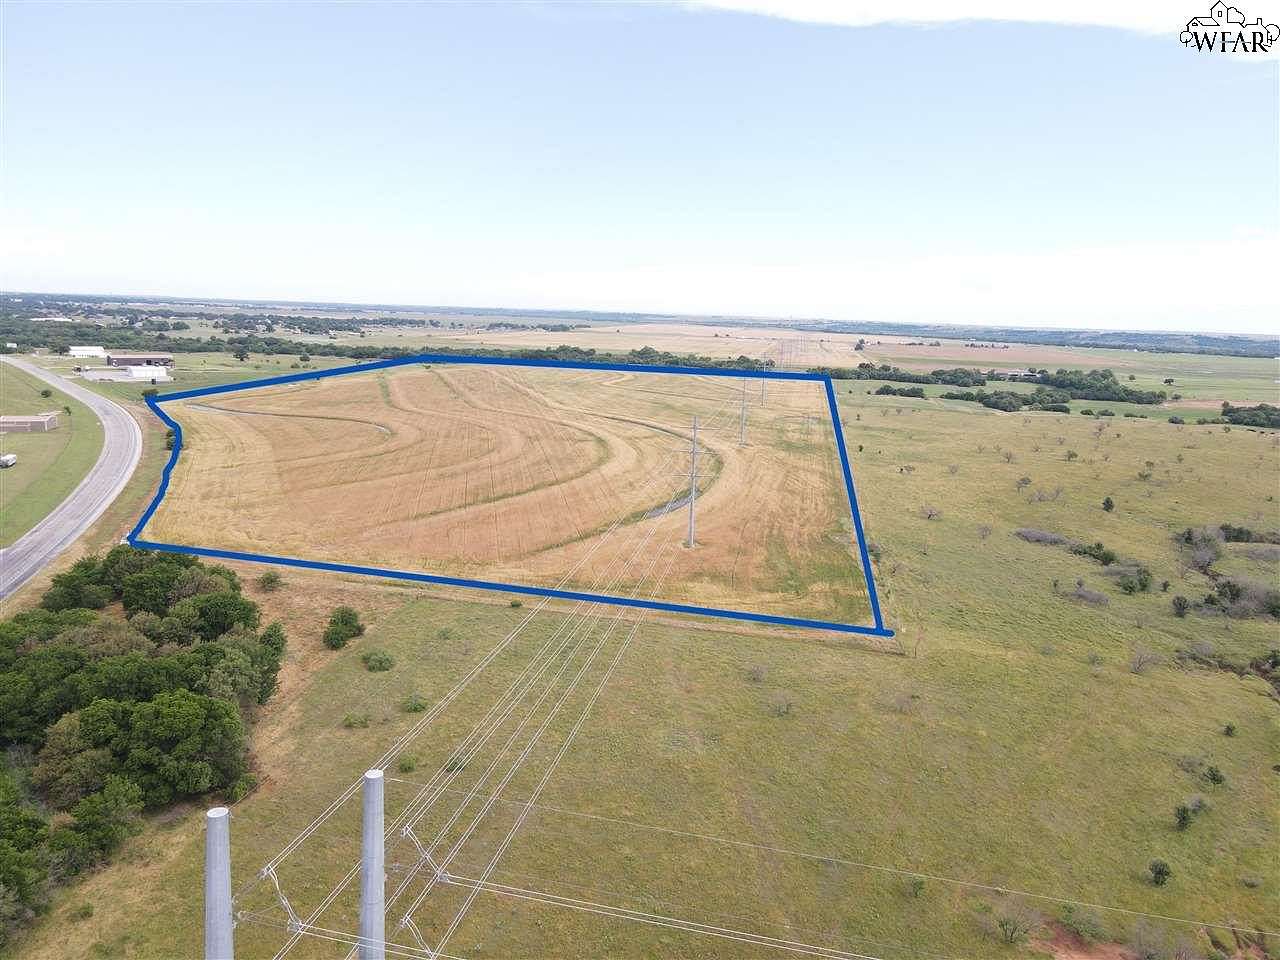 23.6 Acres of Land for Sale in Burkburnett, Texas